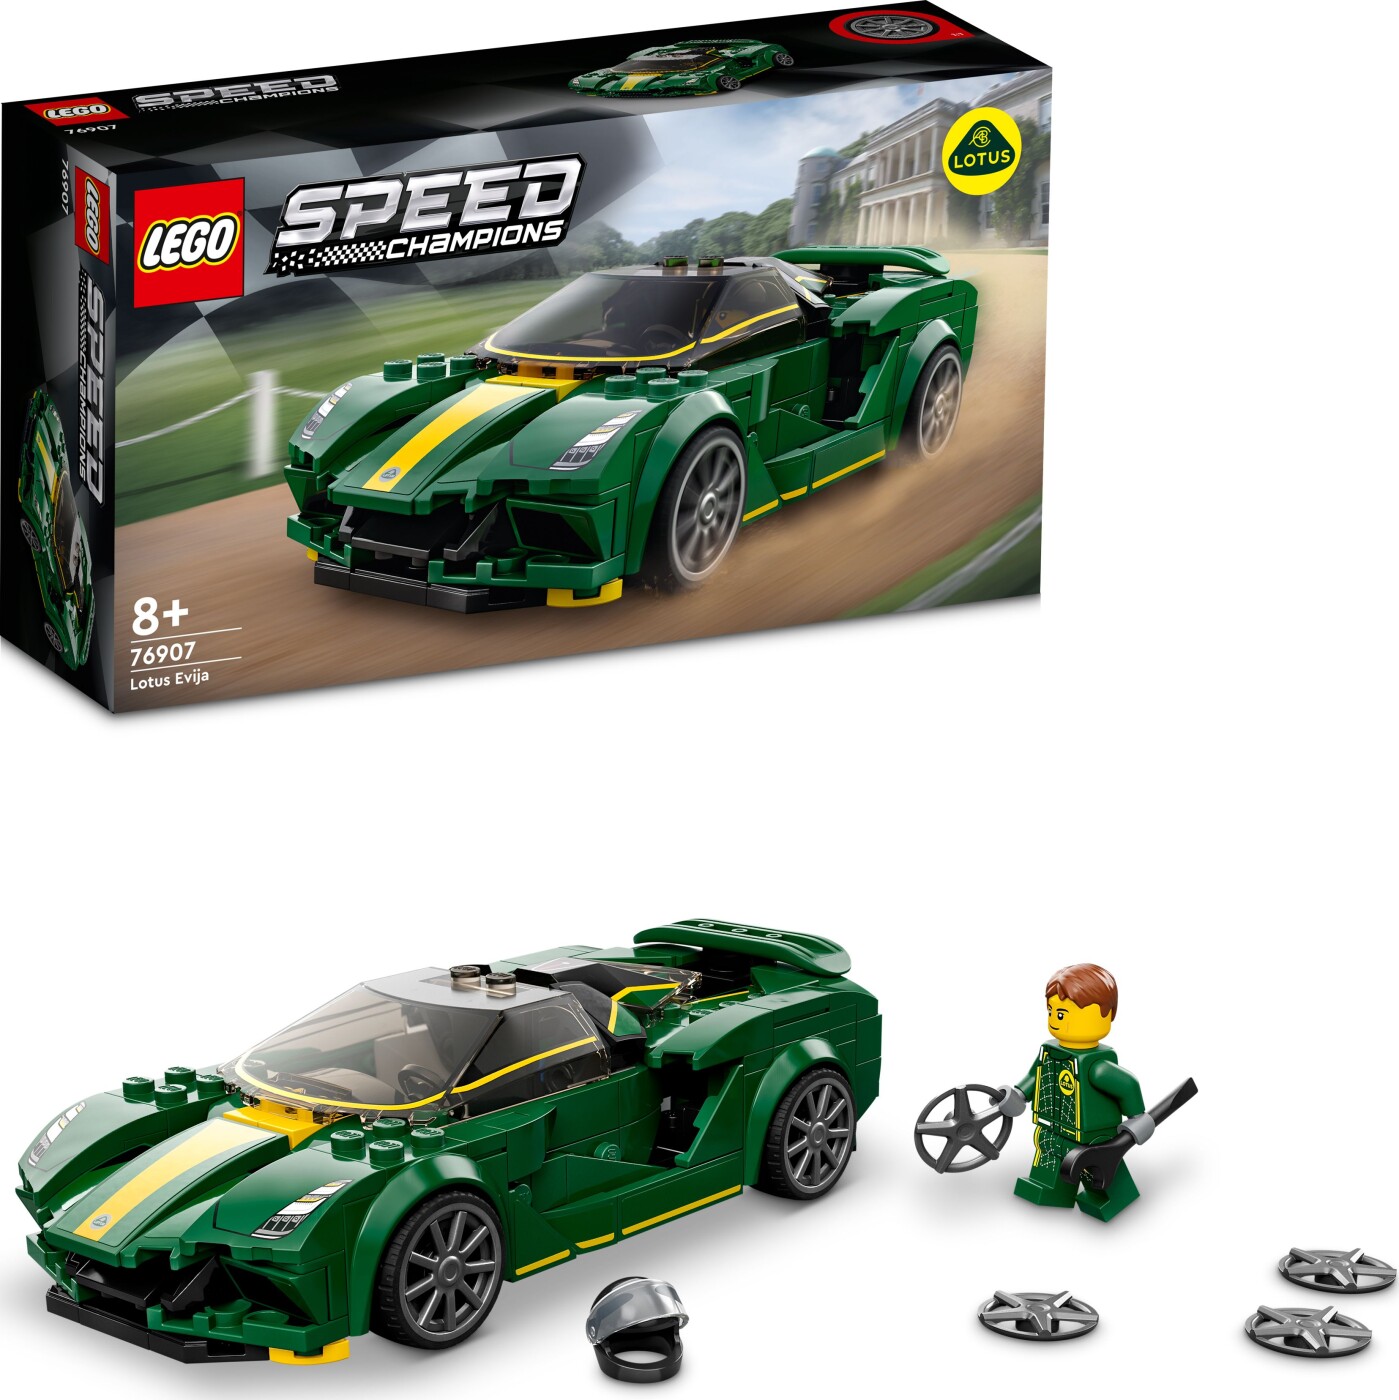 Billede af Lego Speed Champions - Lotus Evija - 76907 hos Gucca.dk